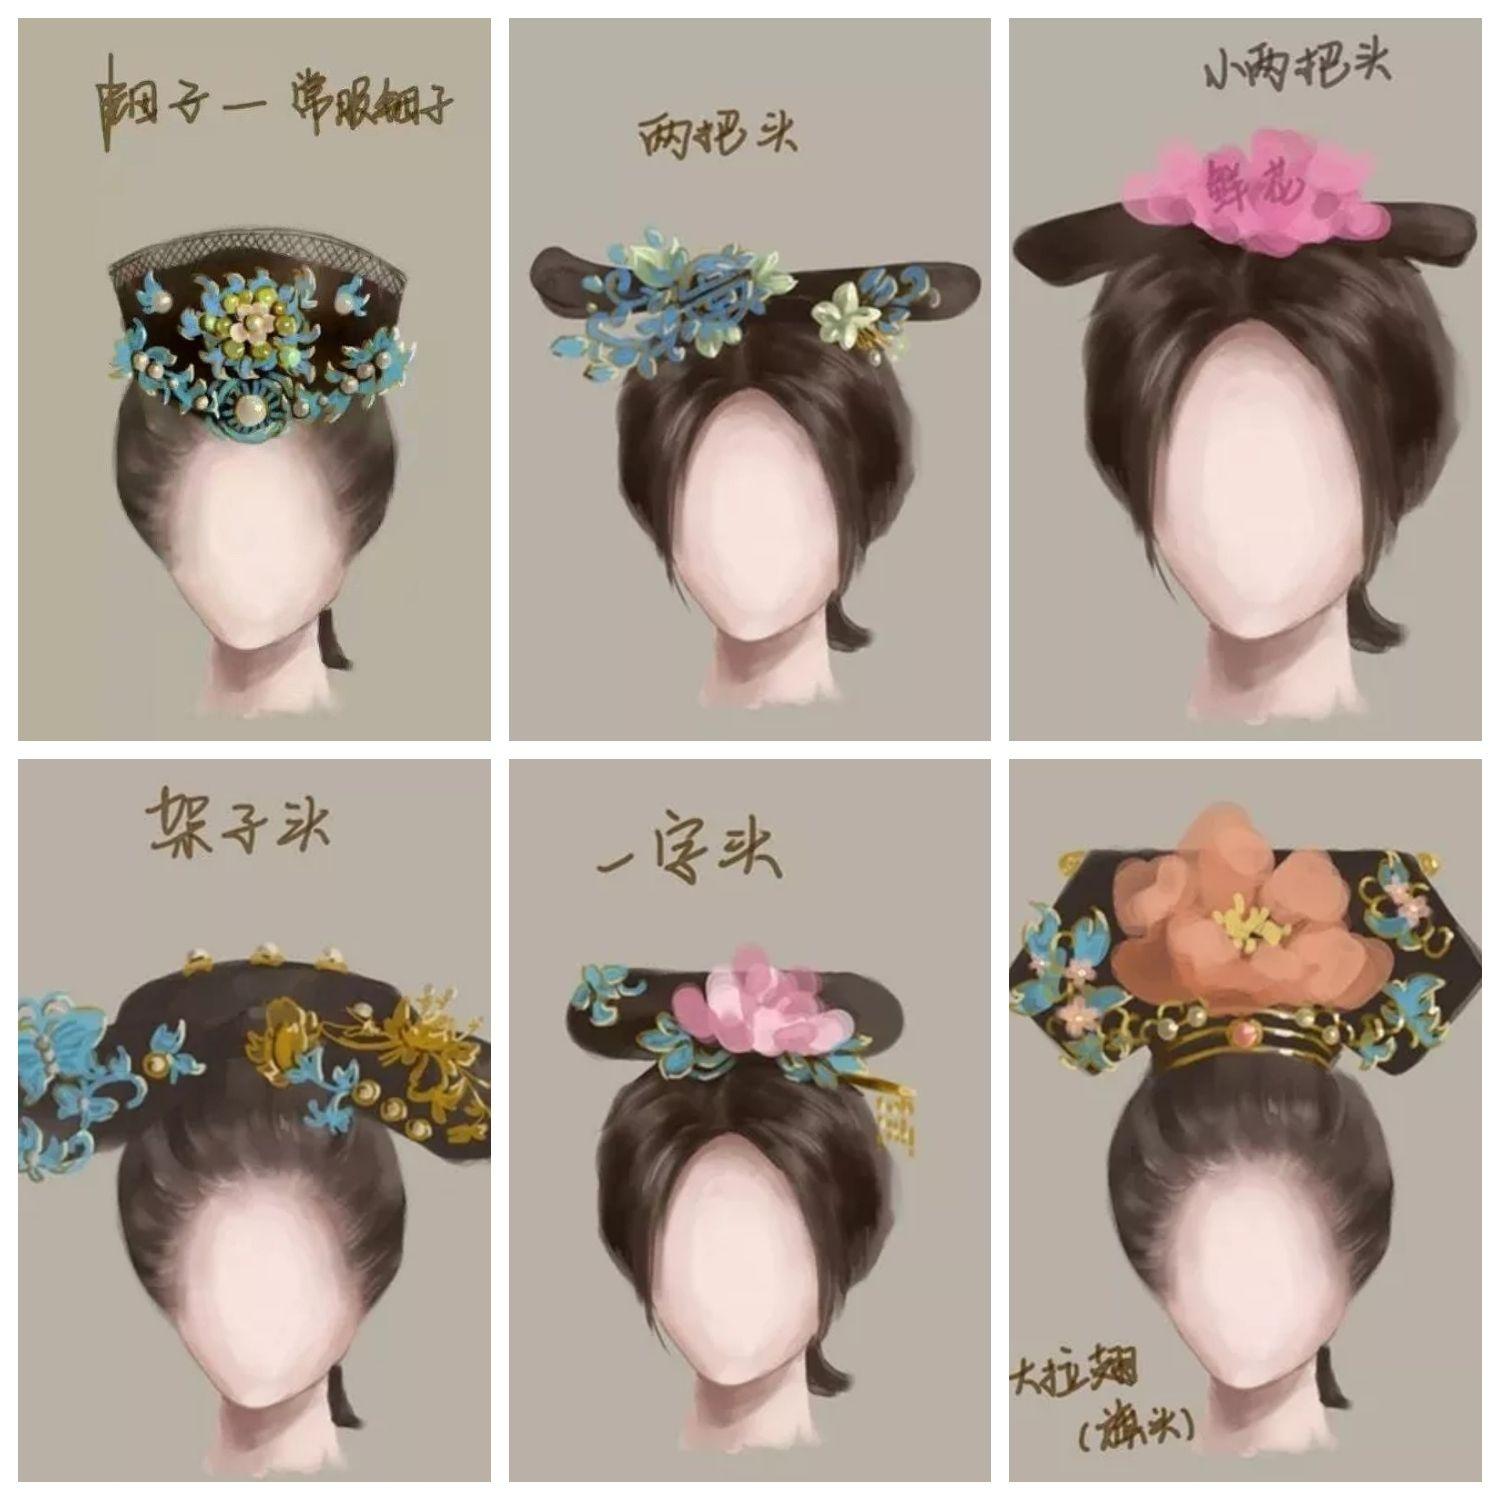 绾青丝中国古代女子发型